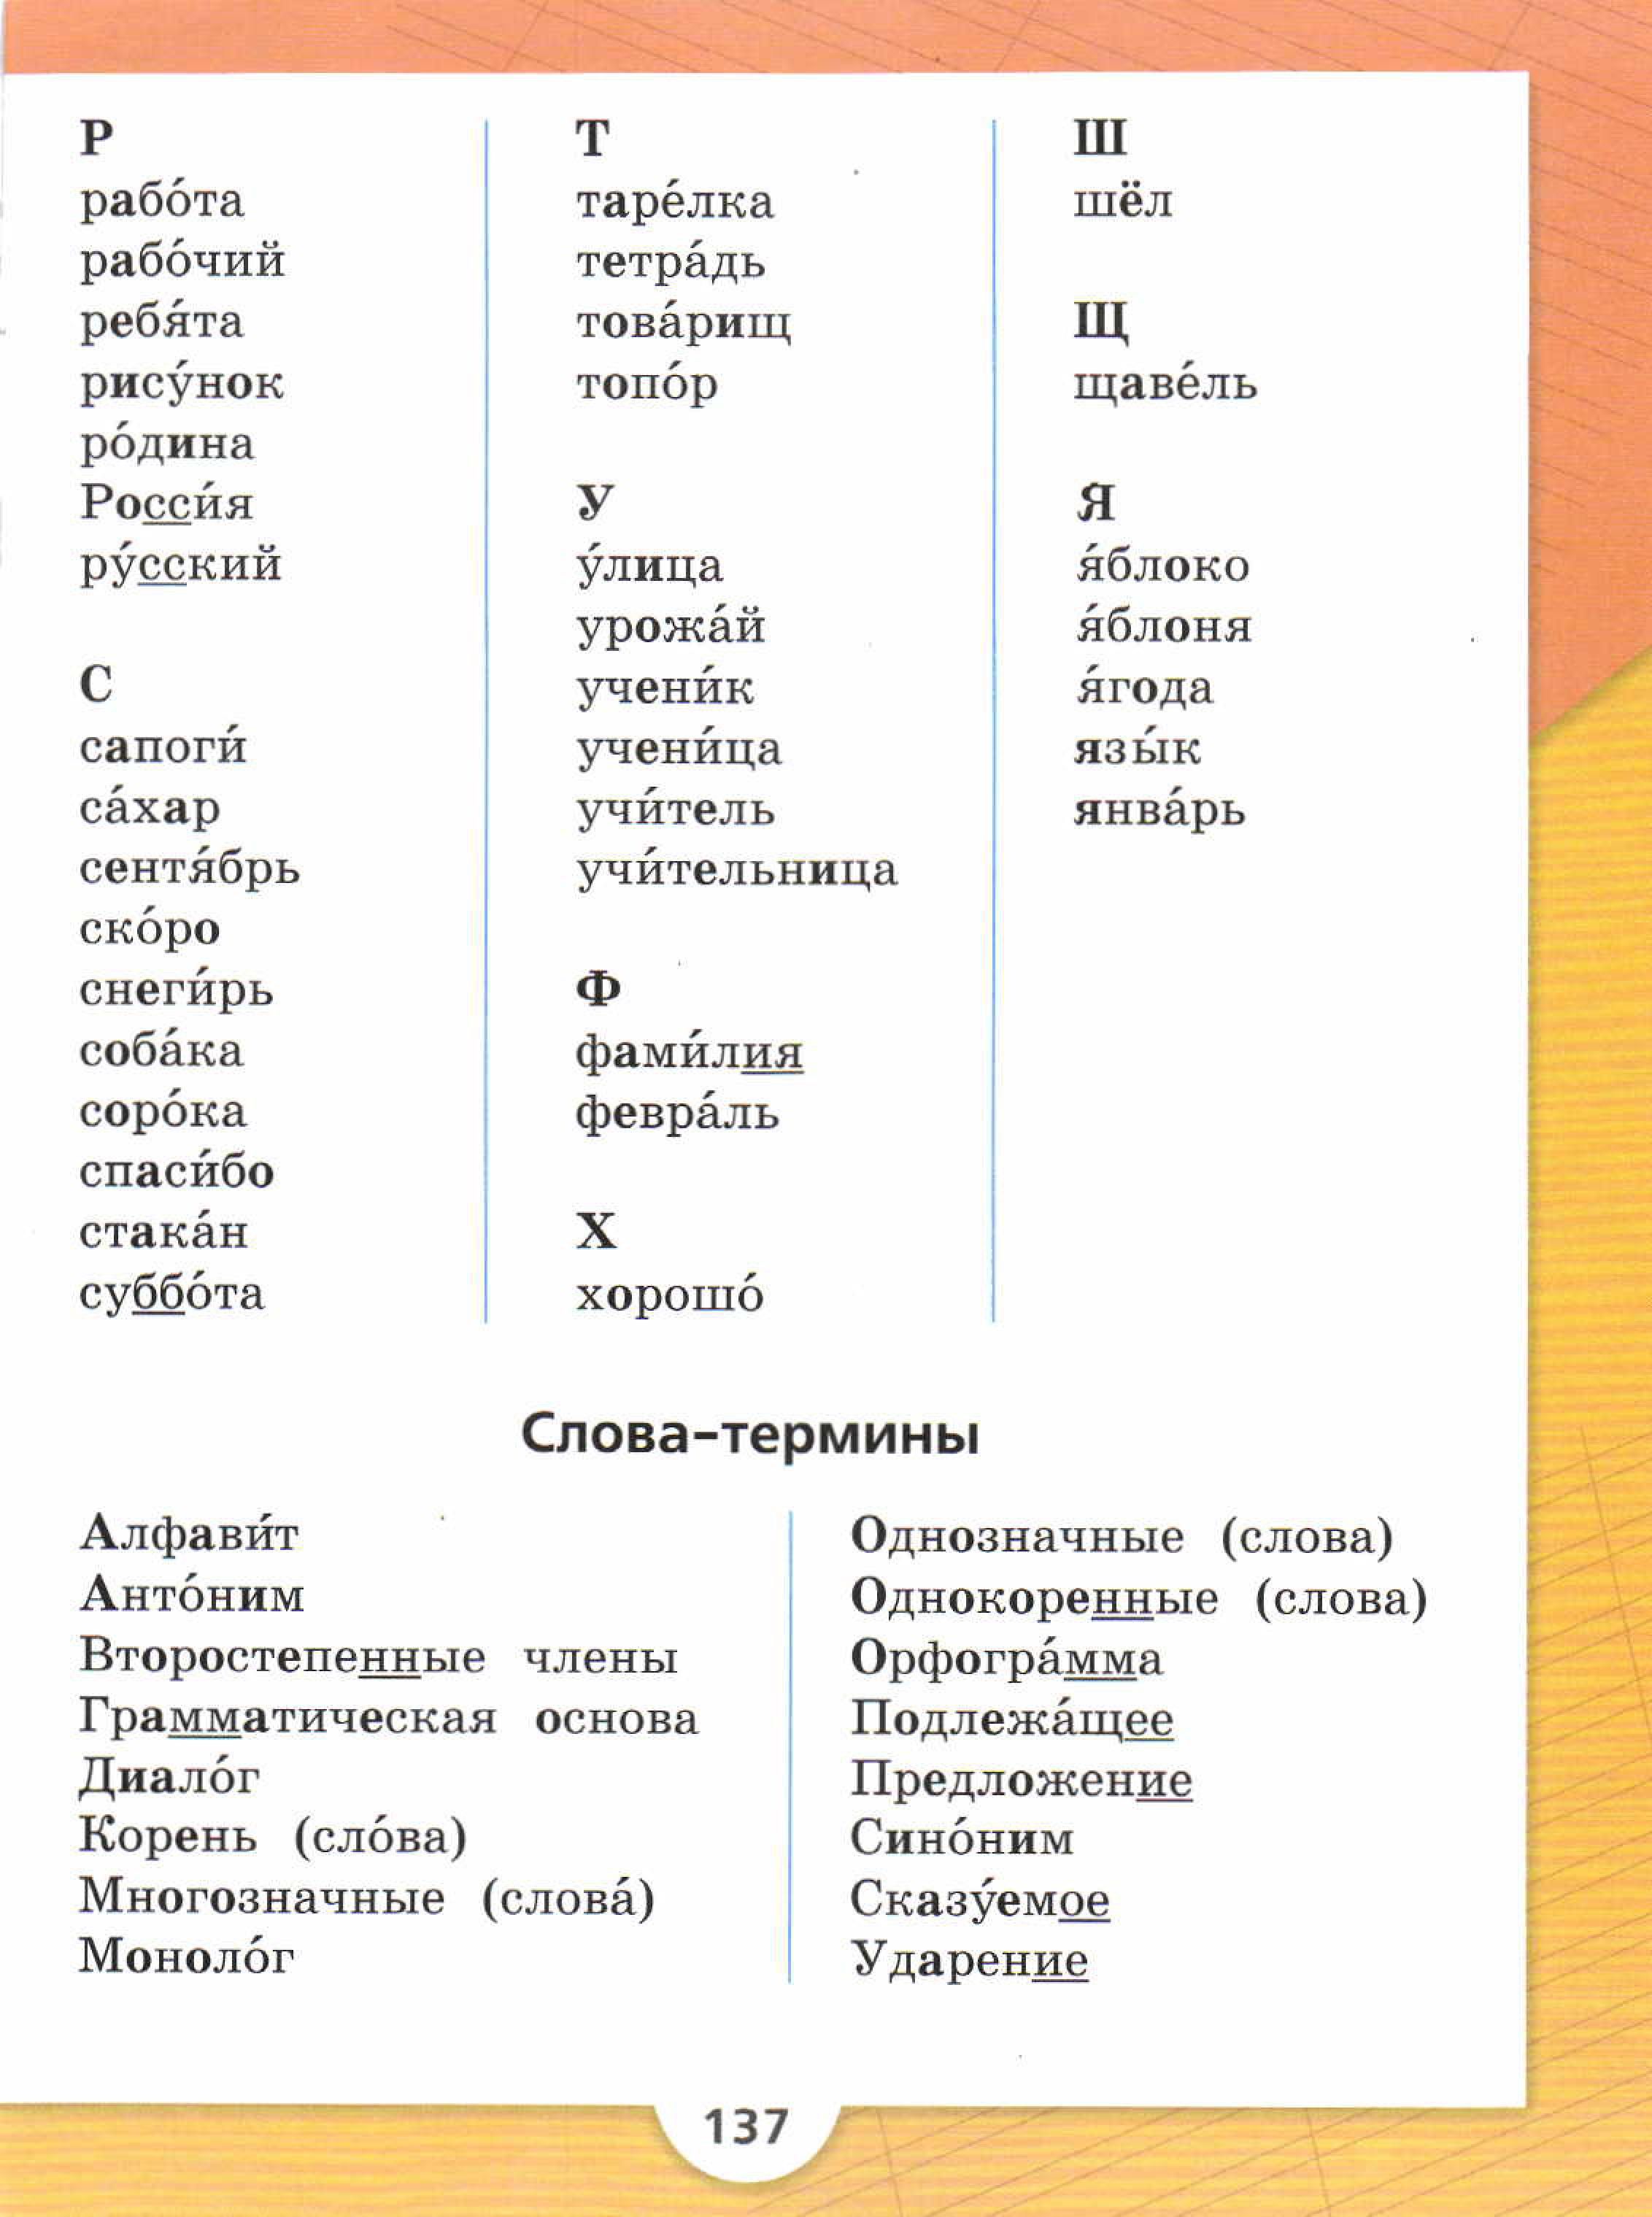 Словарные слова из учебника 2 класса по русскому языку школа России